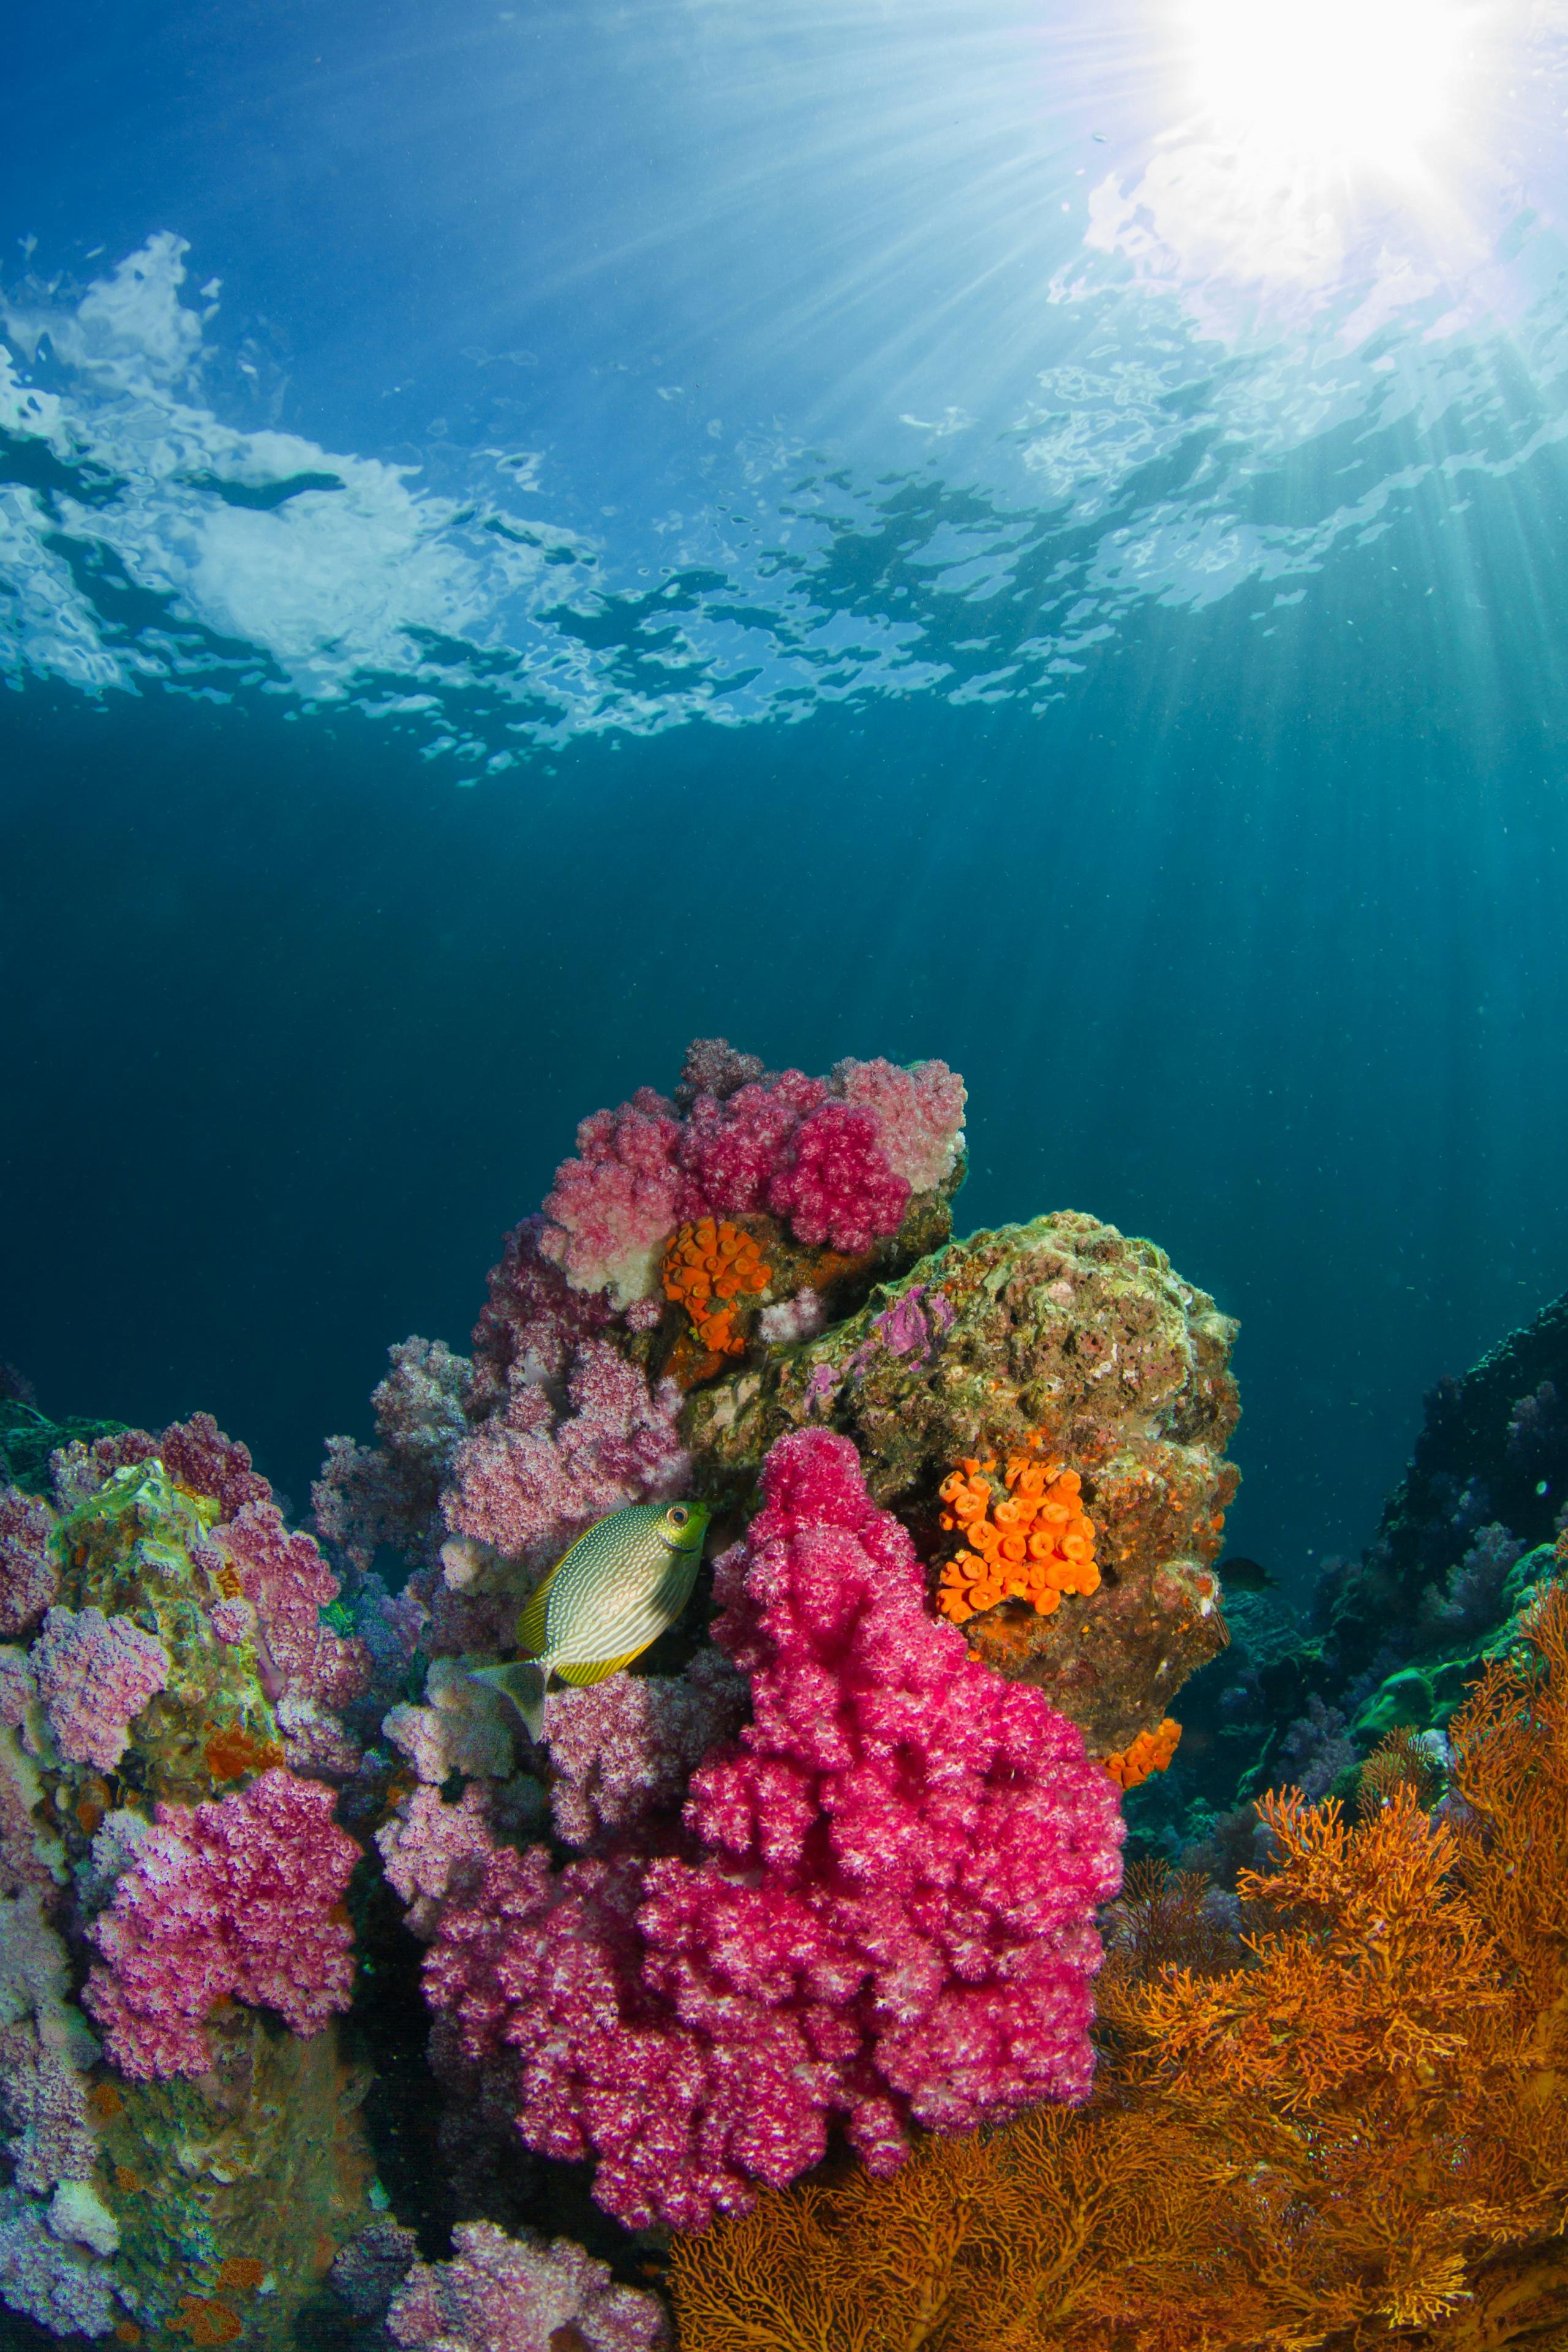 Mundo está a passar por outro episódio em massa de branqueamento de corais